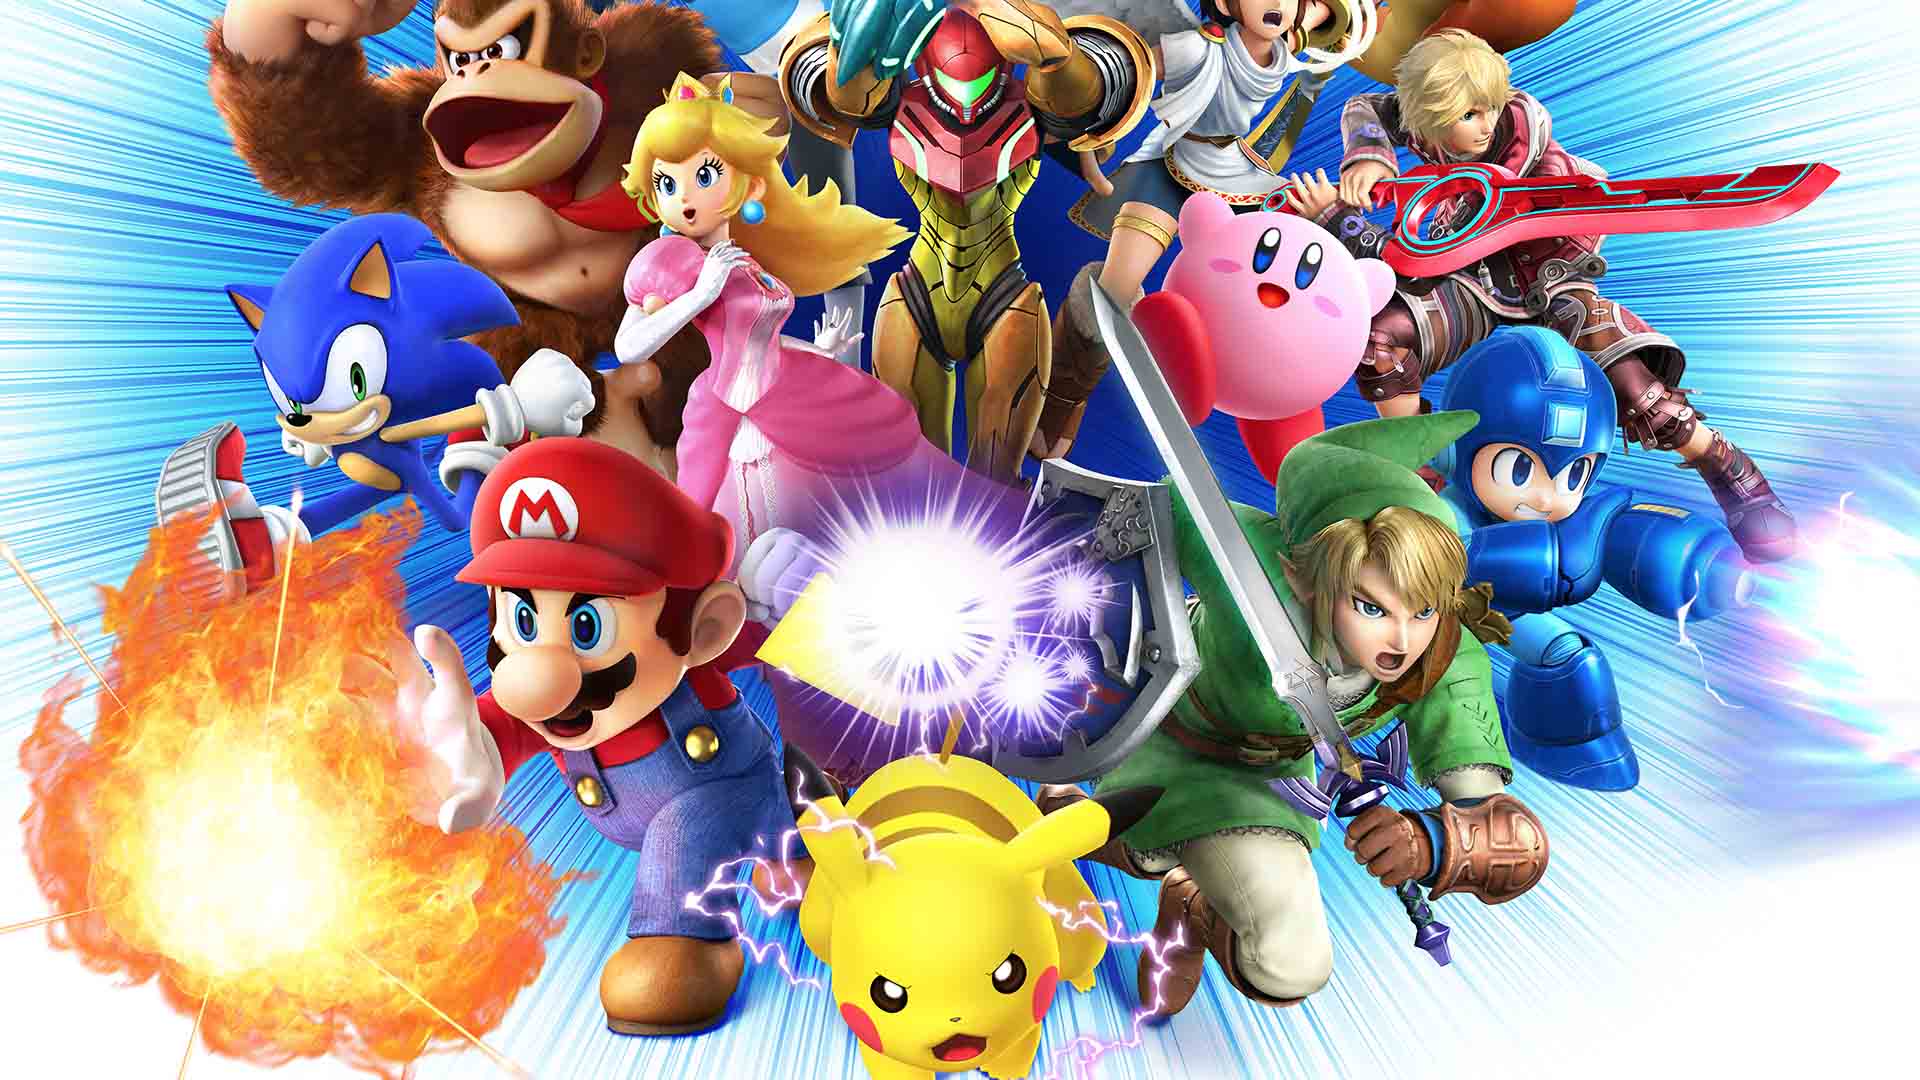 Hot nintendo. Супер смэш БРОС персонажи. Nintendo Smash Bros.. Super Smash Bros for Wii u. Super Smash Bros. Ultimate (2018).